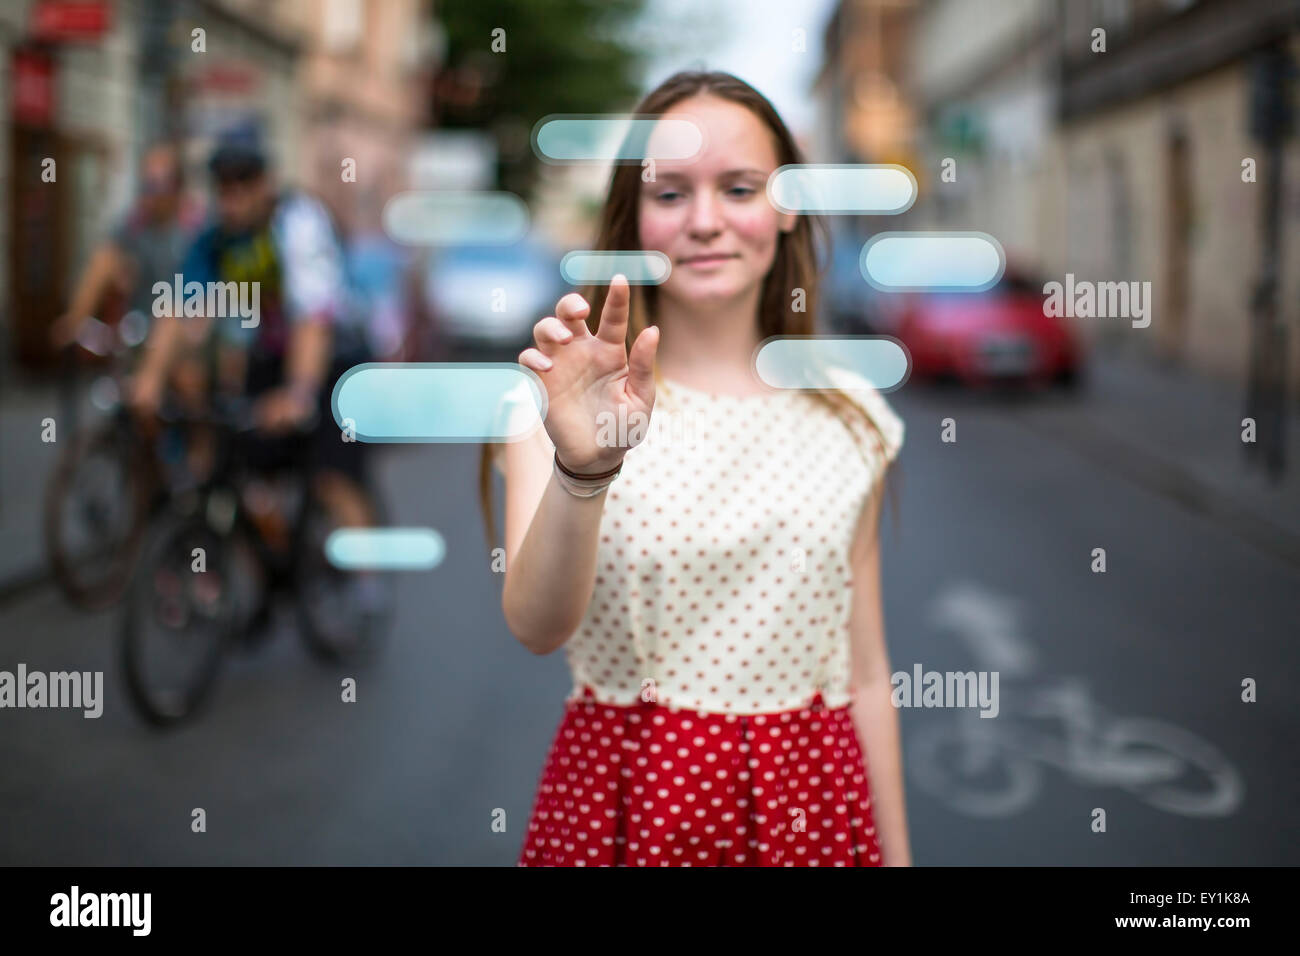 Giovani teen Cute girl in strada preme un pulsante immaginario nell'aria. Pulsanti con posto per il vostro testo. Foto Stock